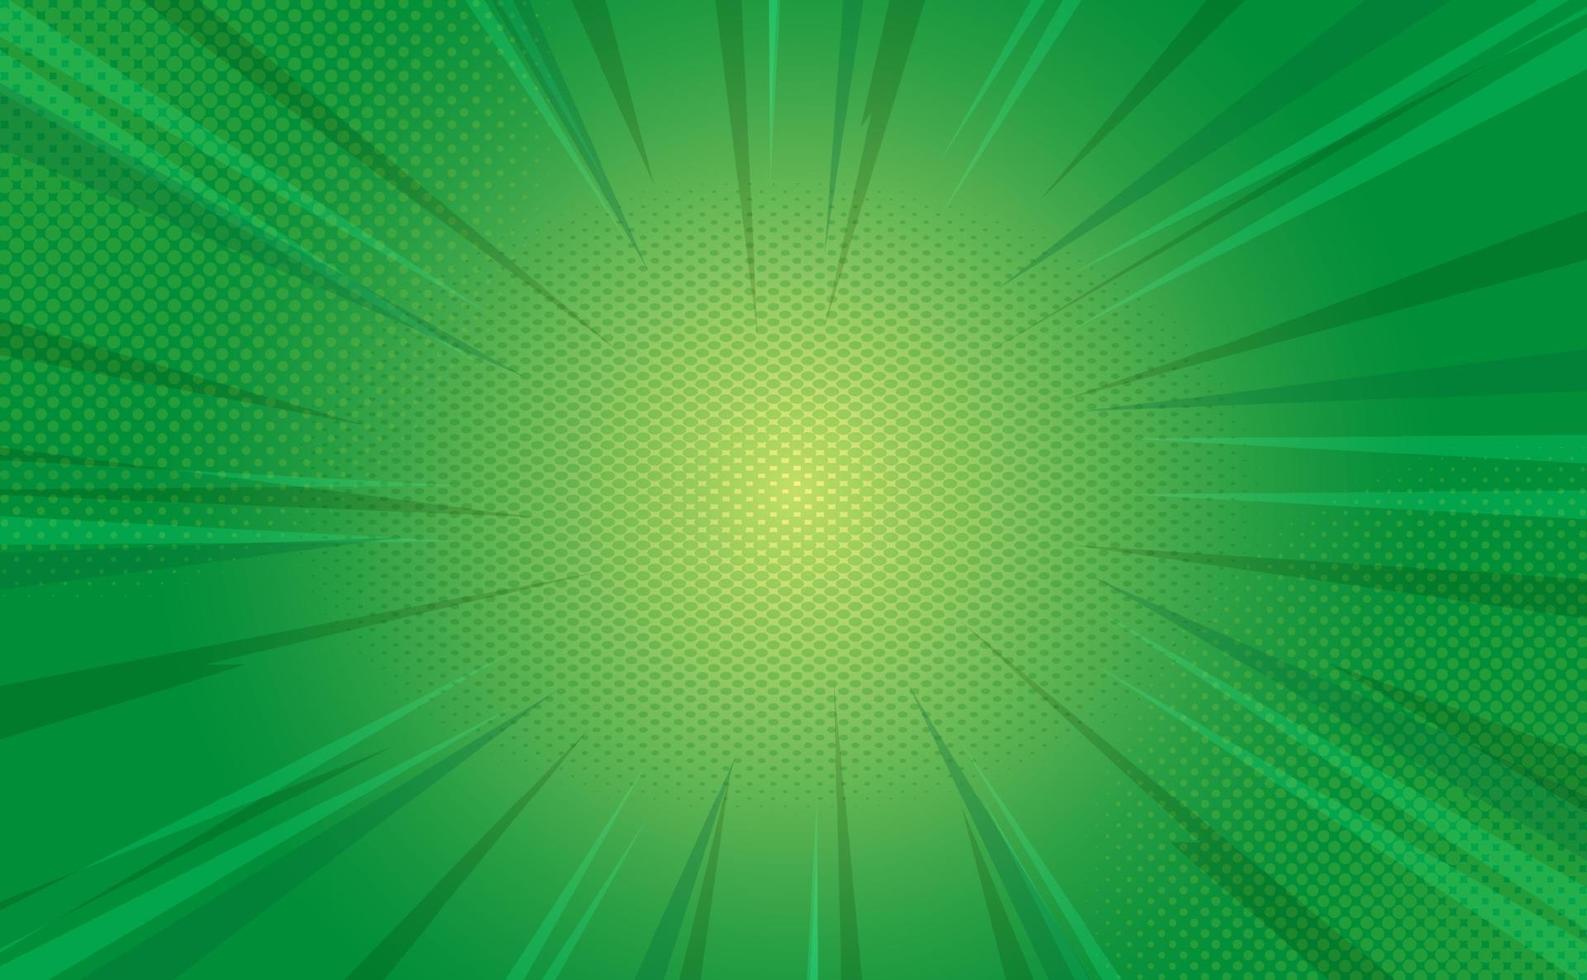 Sunburst-Pop-Art-grüner Comic-Buch-Halbtonhintergrund vektor